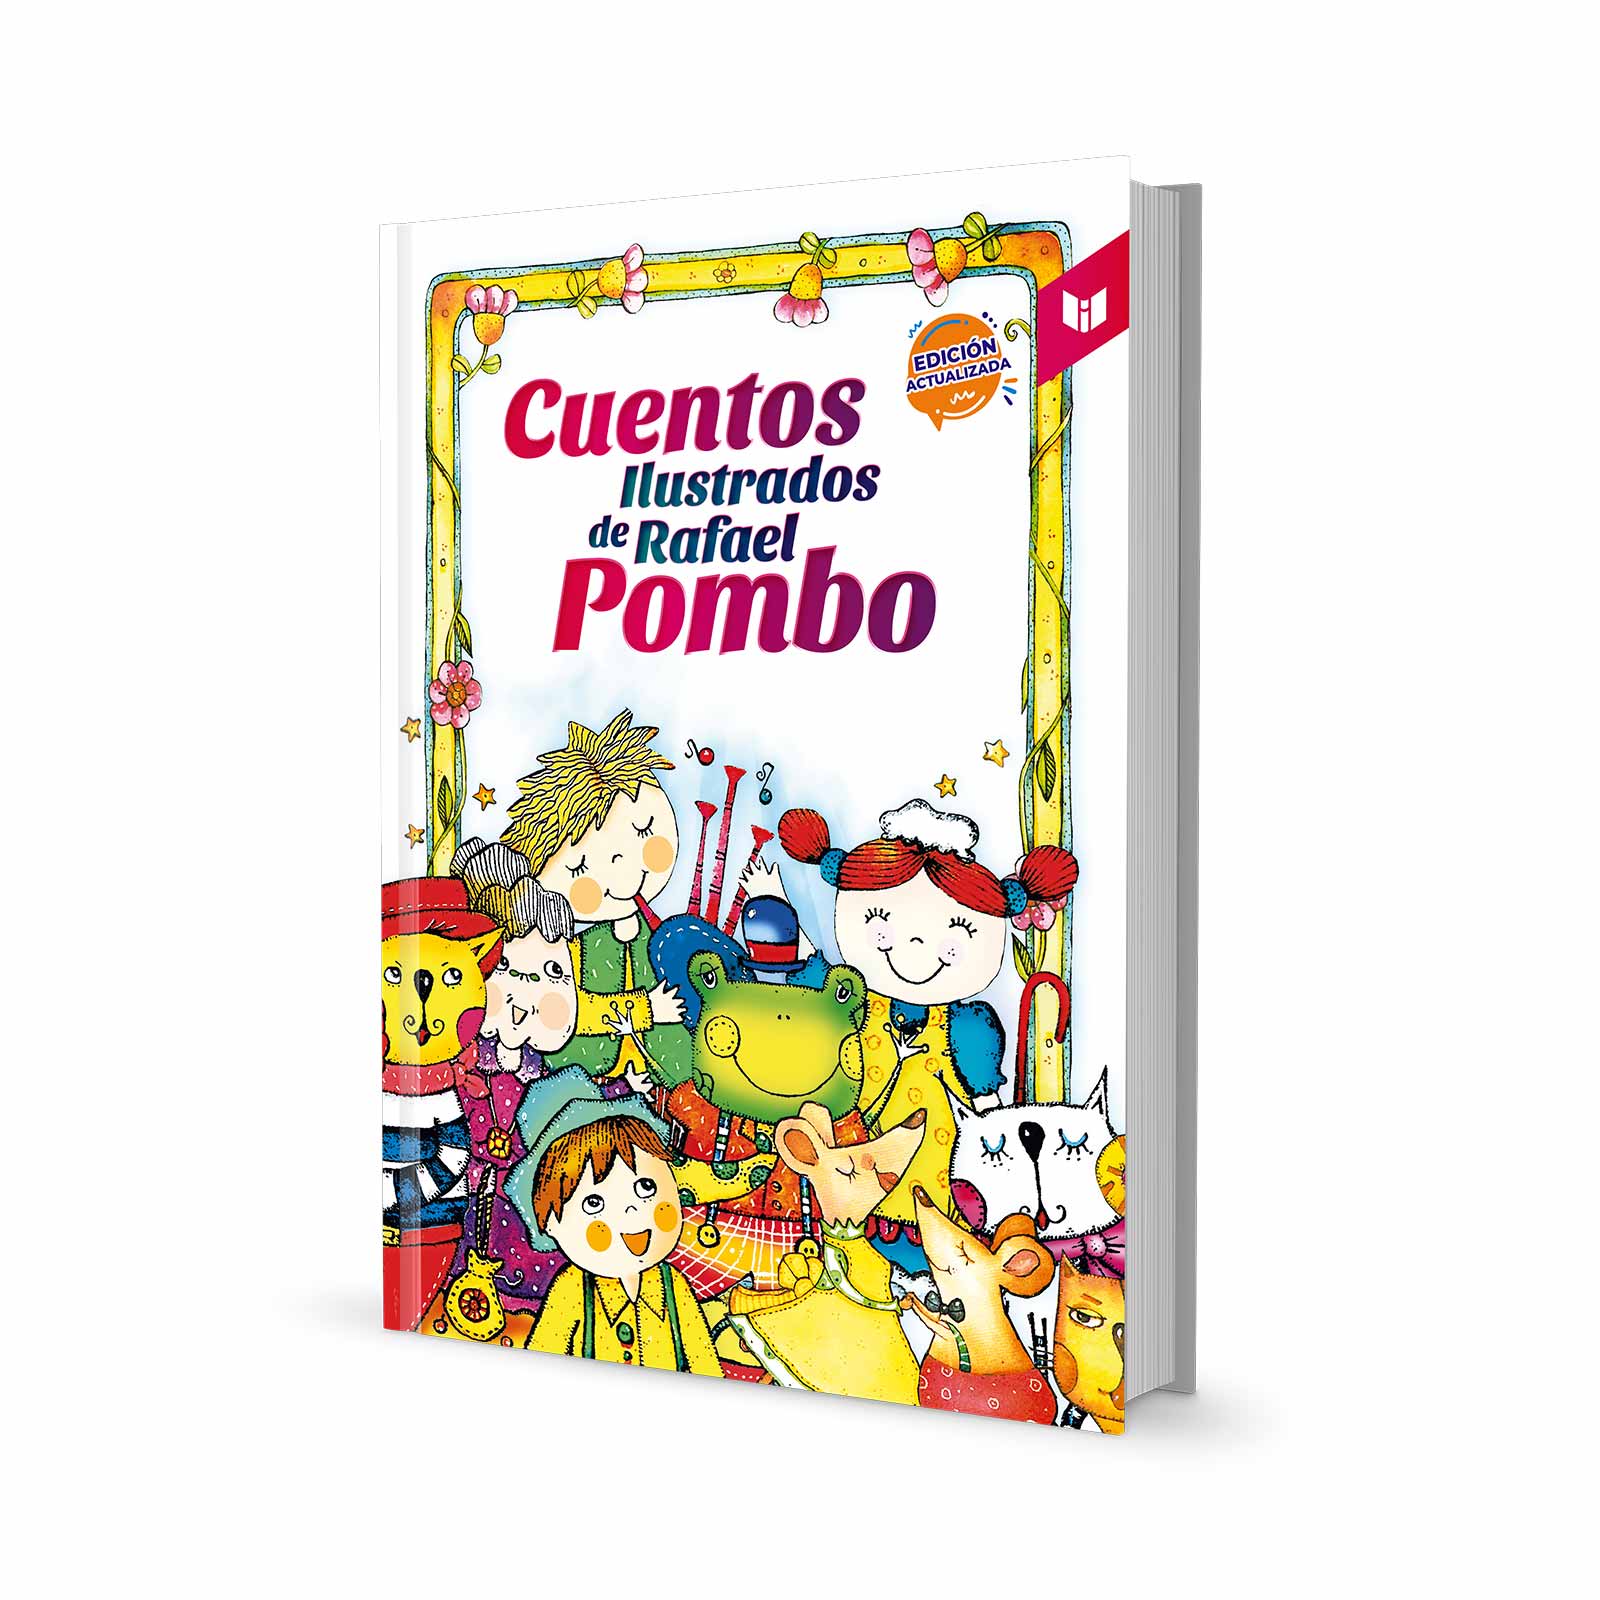 Cuentos ilustrados de Rafael Pombo: edición actualizada 2021